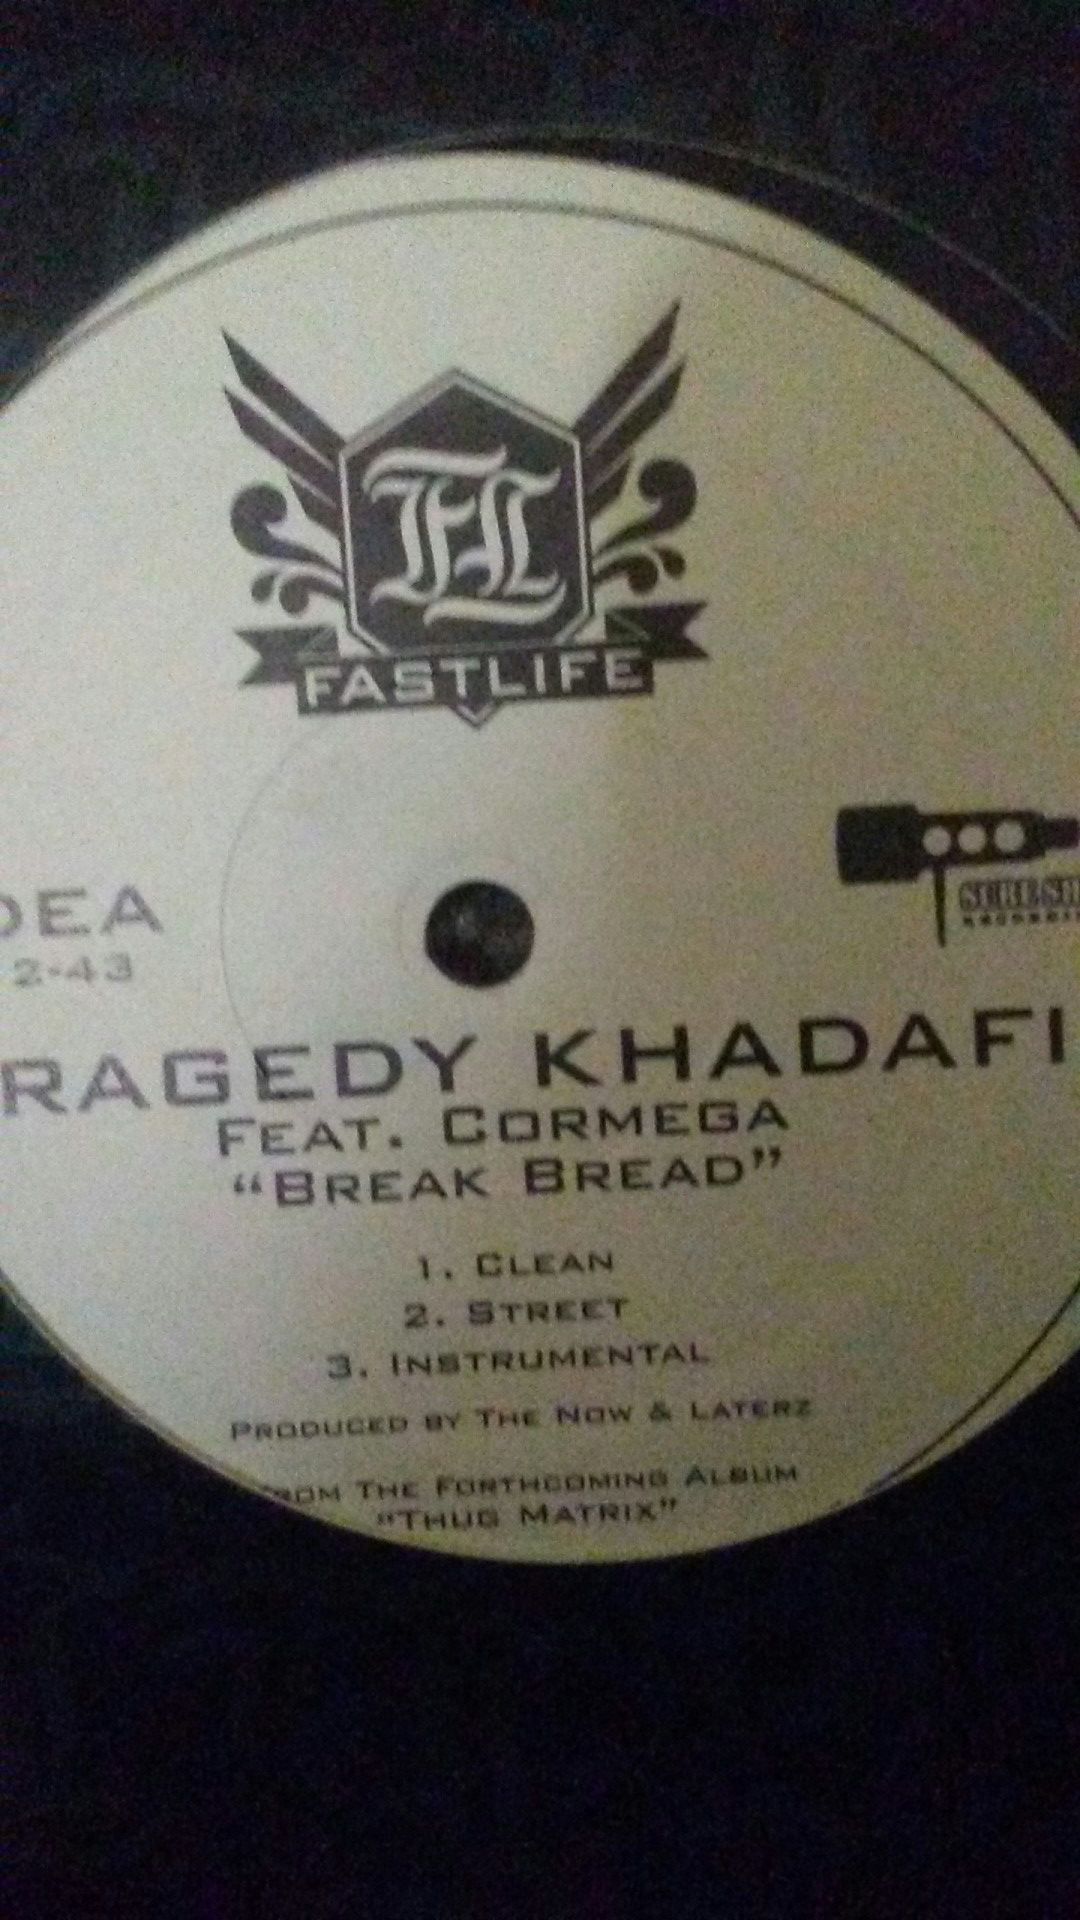 Tragedy khadafi break beard 12" single